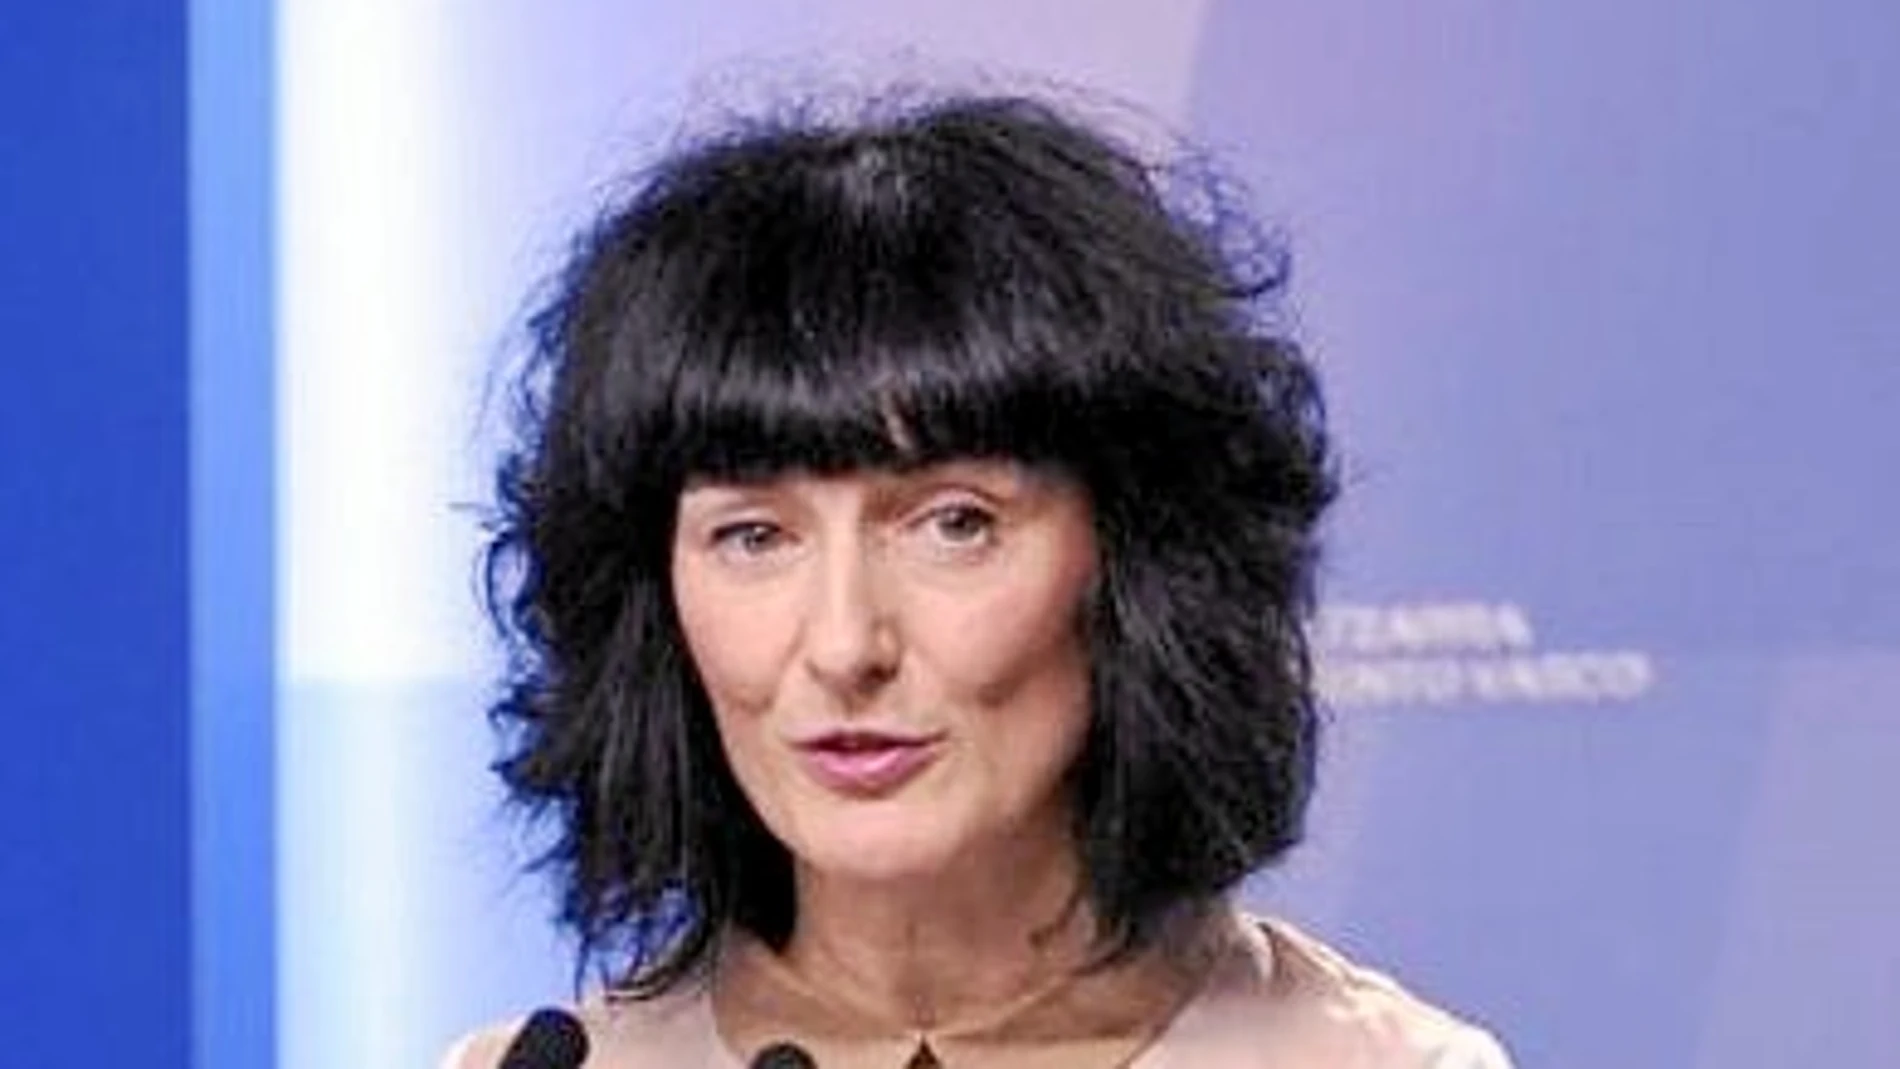 La actual directora de la cadena pública vasca, Maite Iturbe